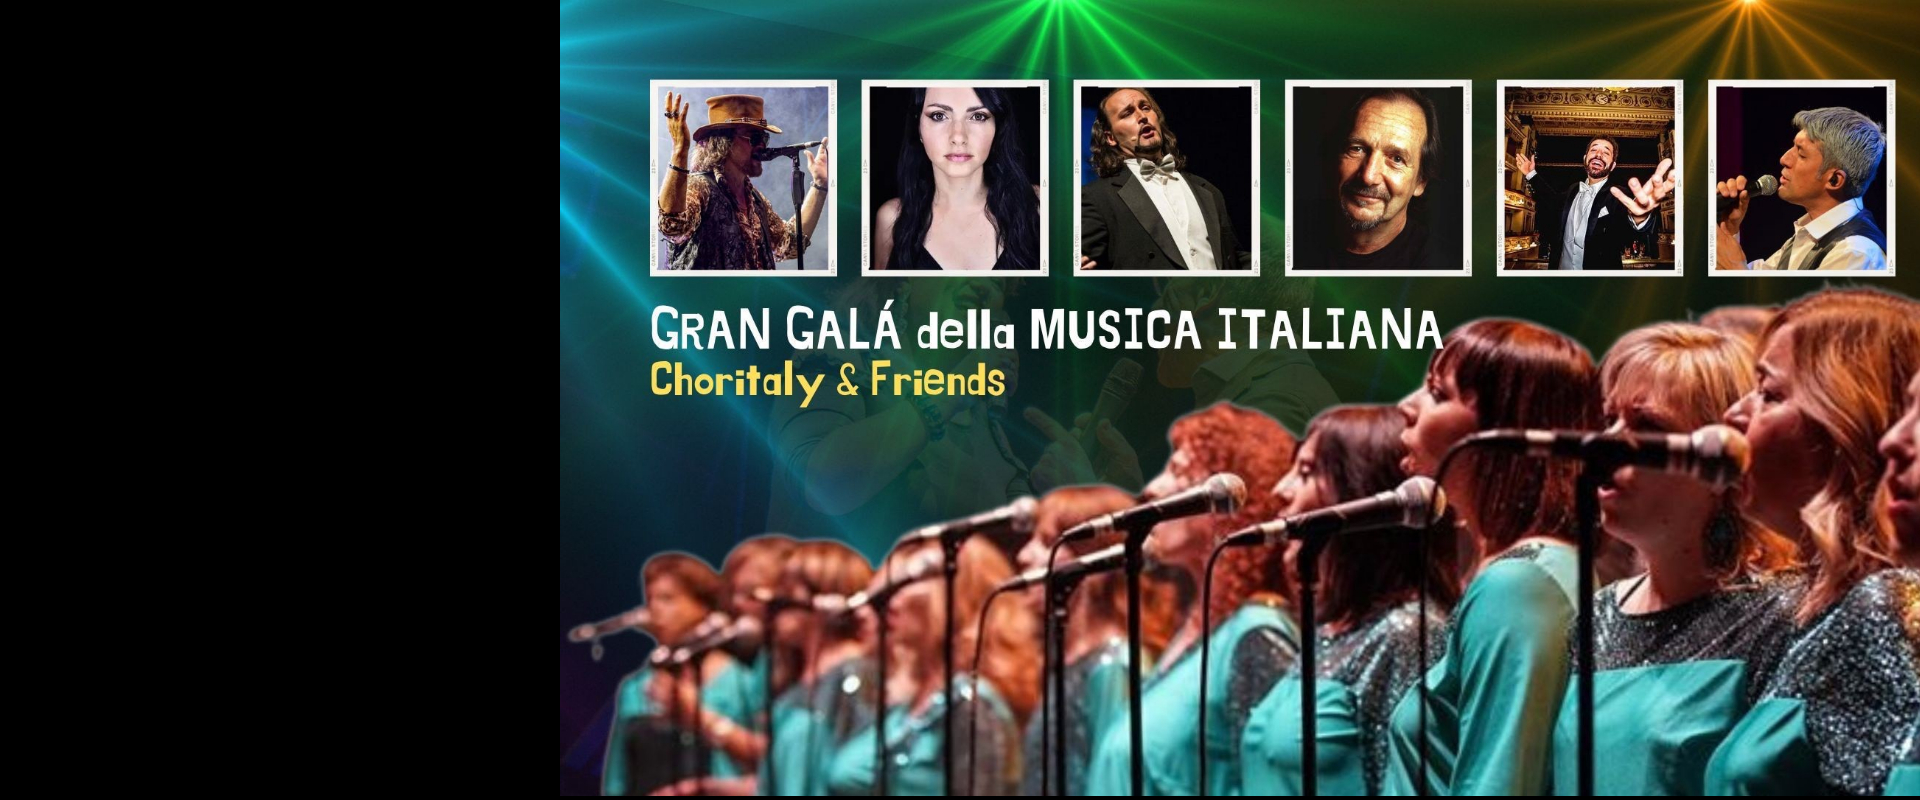 Gran galà della musica italiana